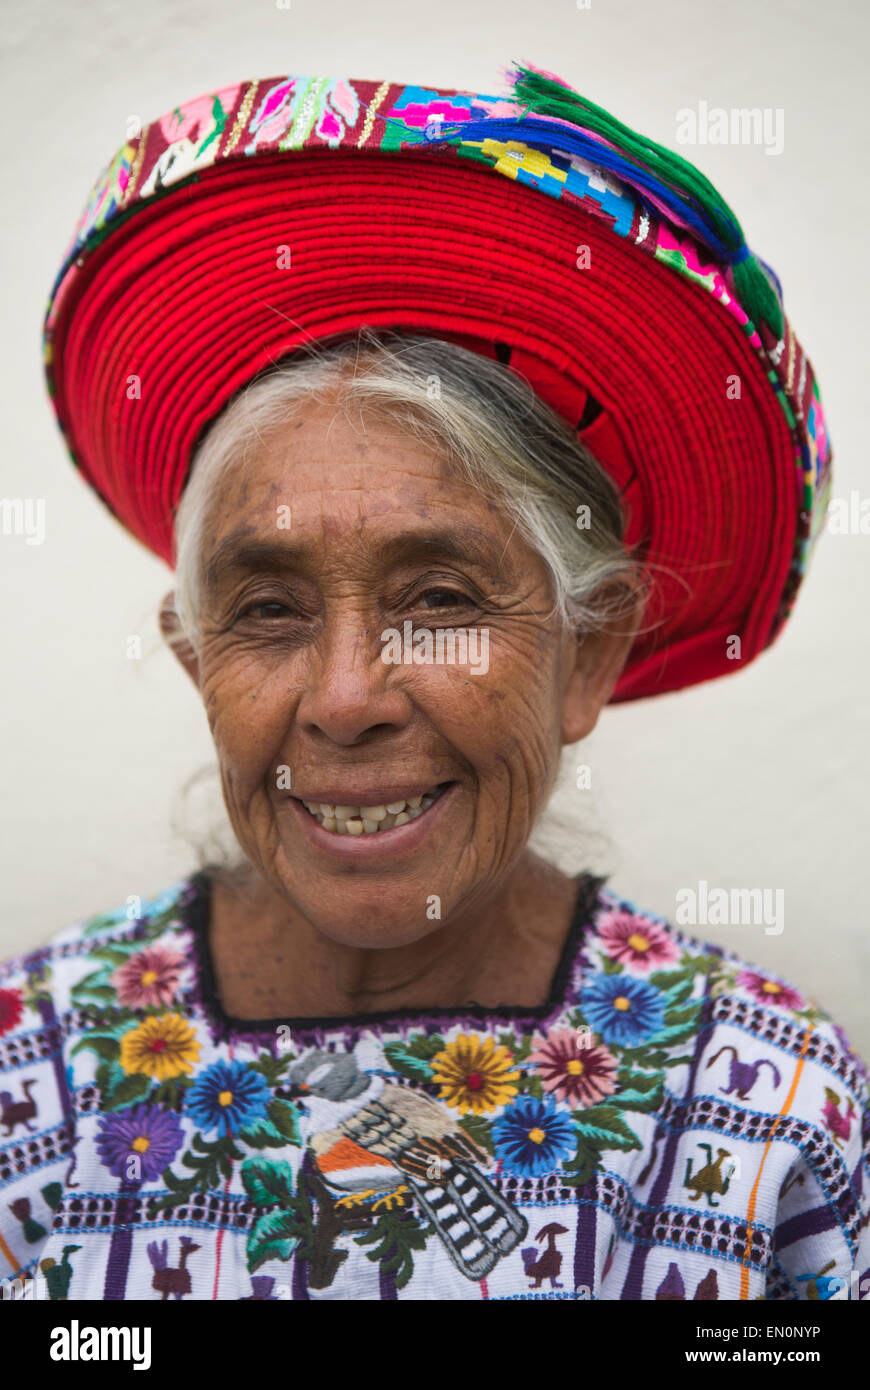 Ritratto di un cittadino del Guatemala Foto Stock